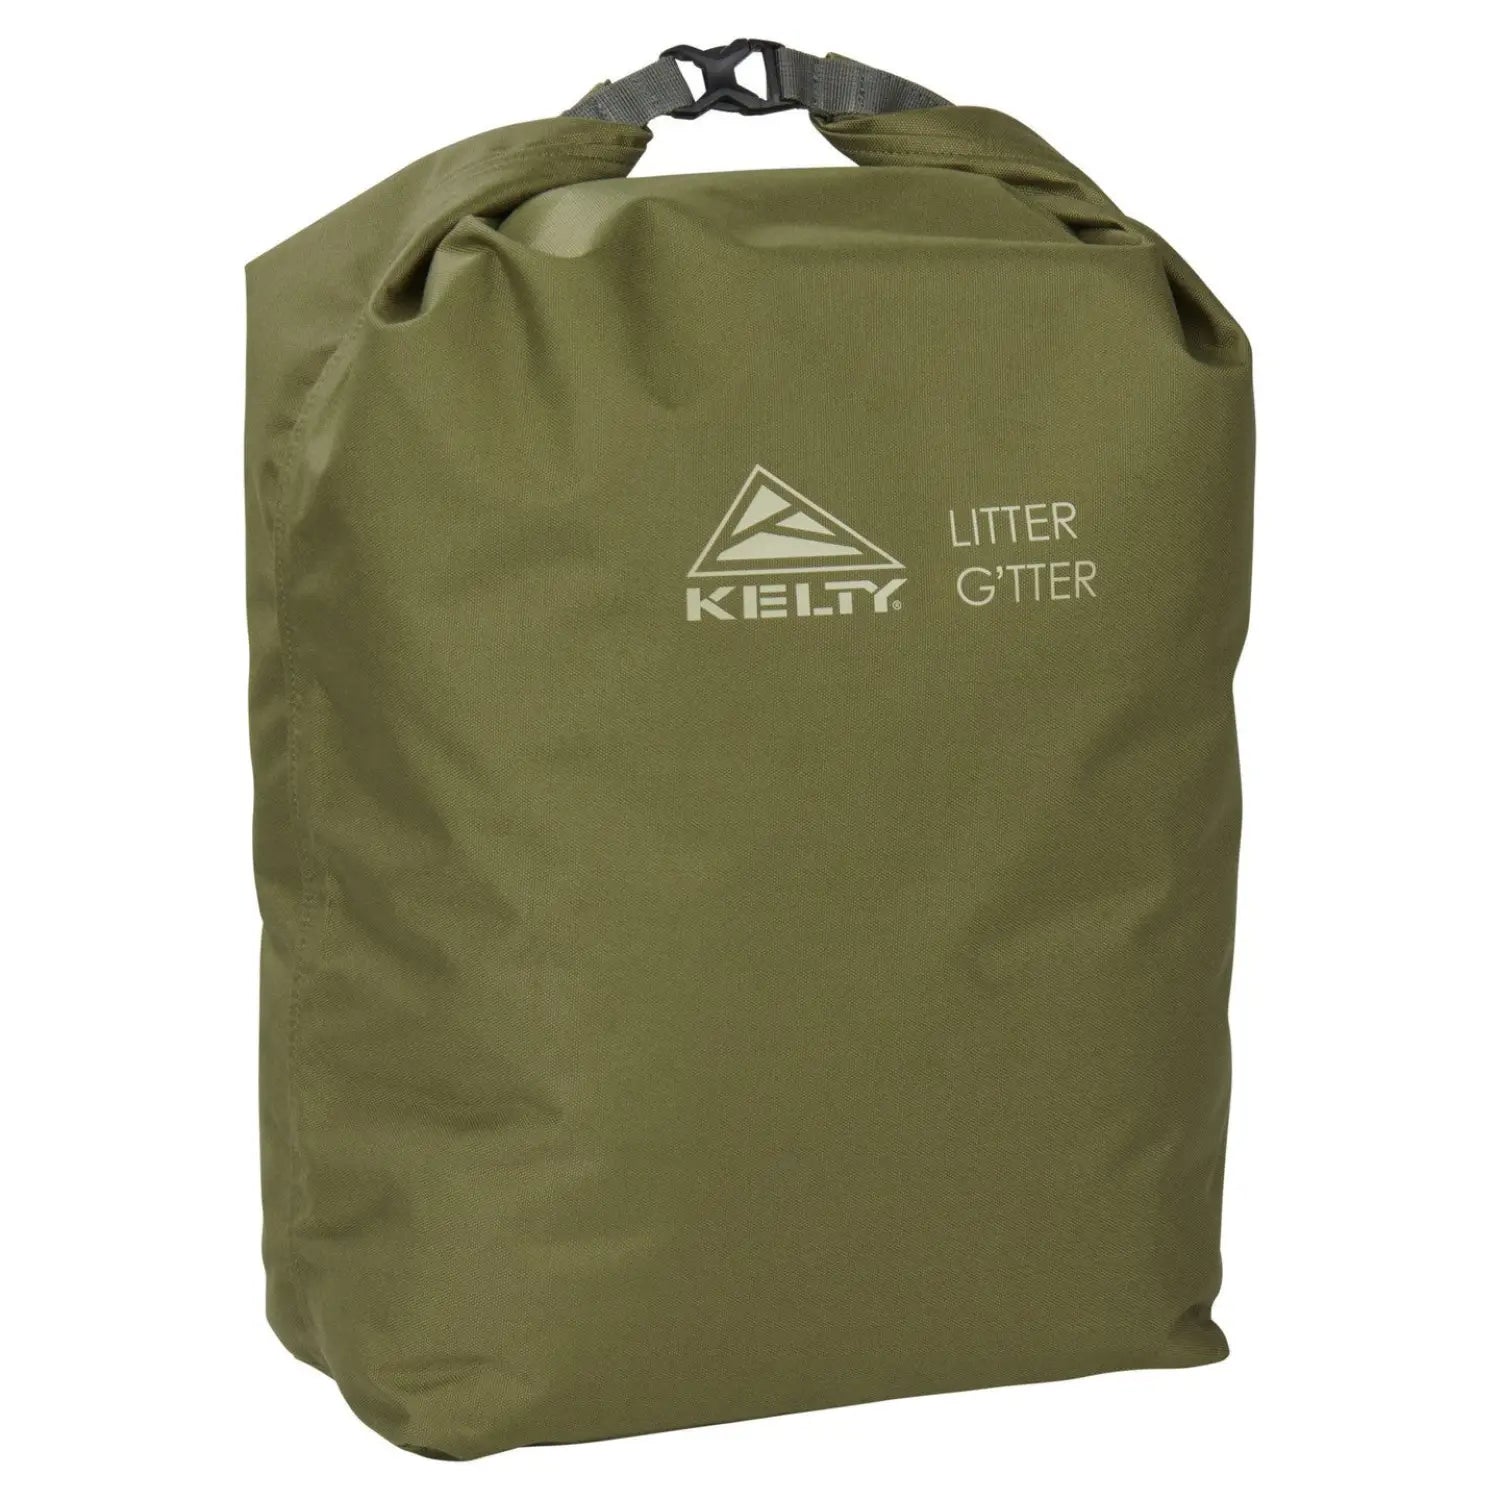 Litter G'tter Reusable Trash Bag